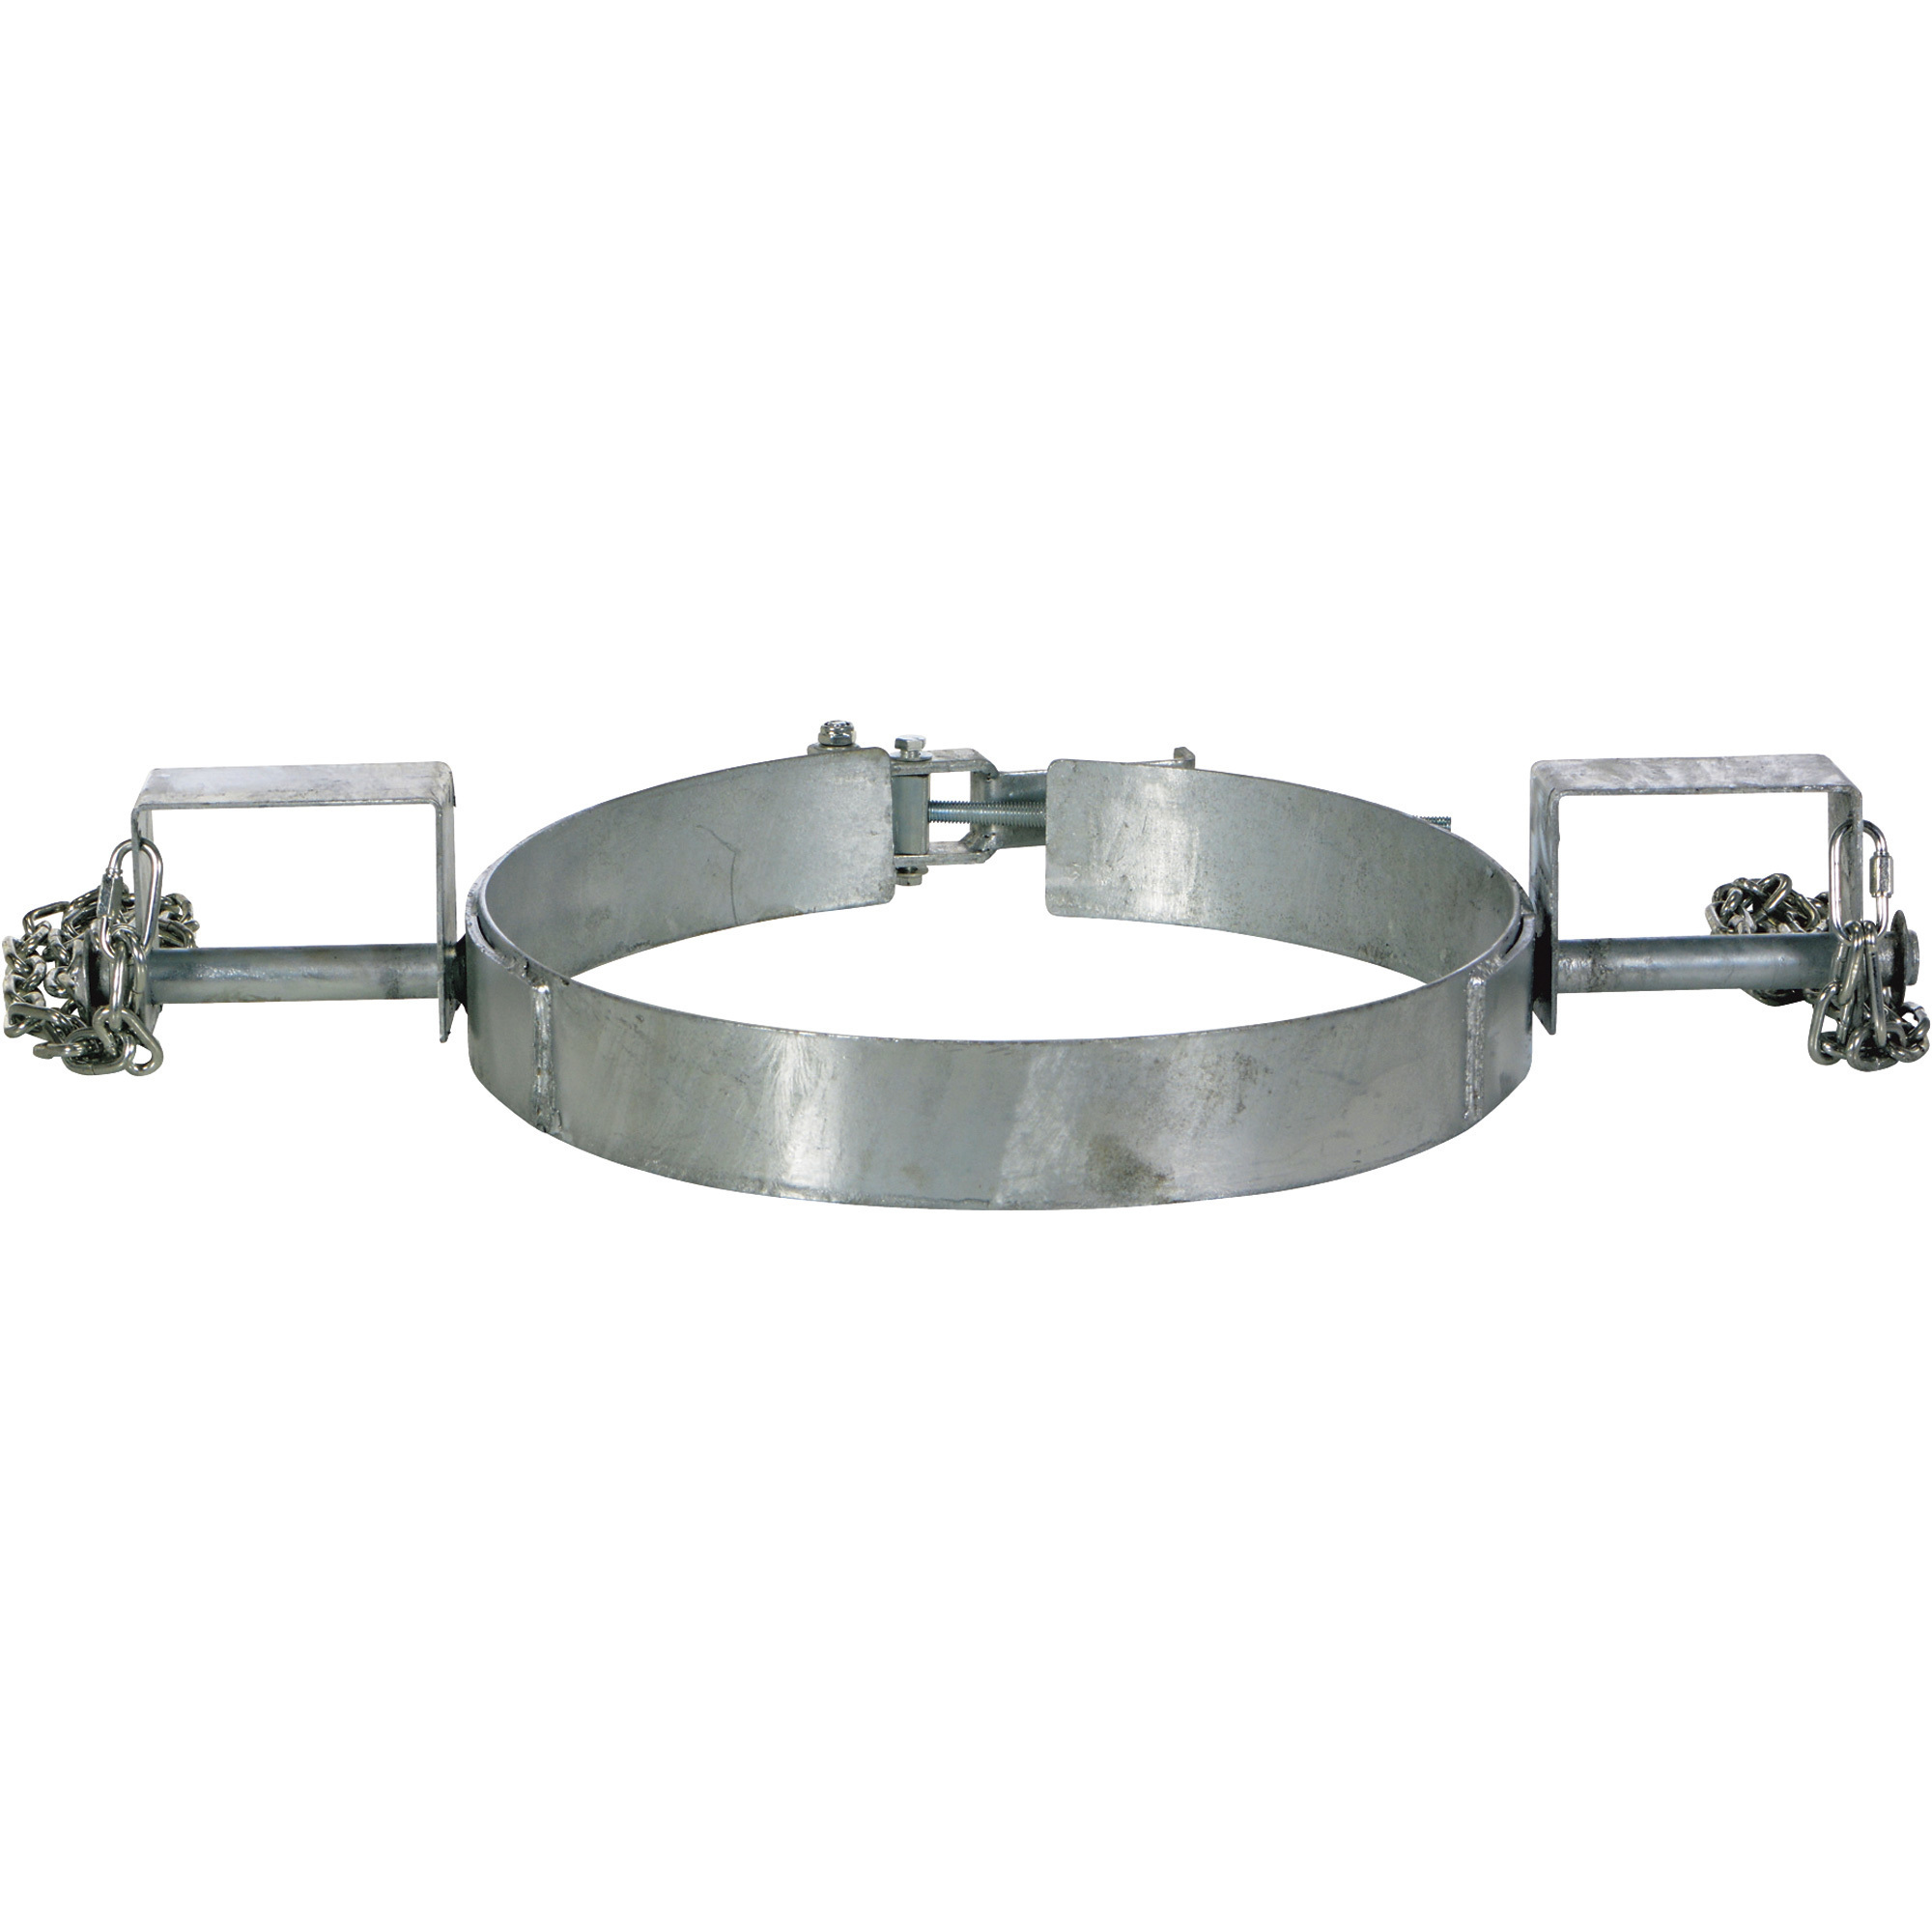 Vestil Tilting Drum Ring, 30-Gallon, Galvanized Finish, Model TDR-30-G